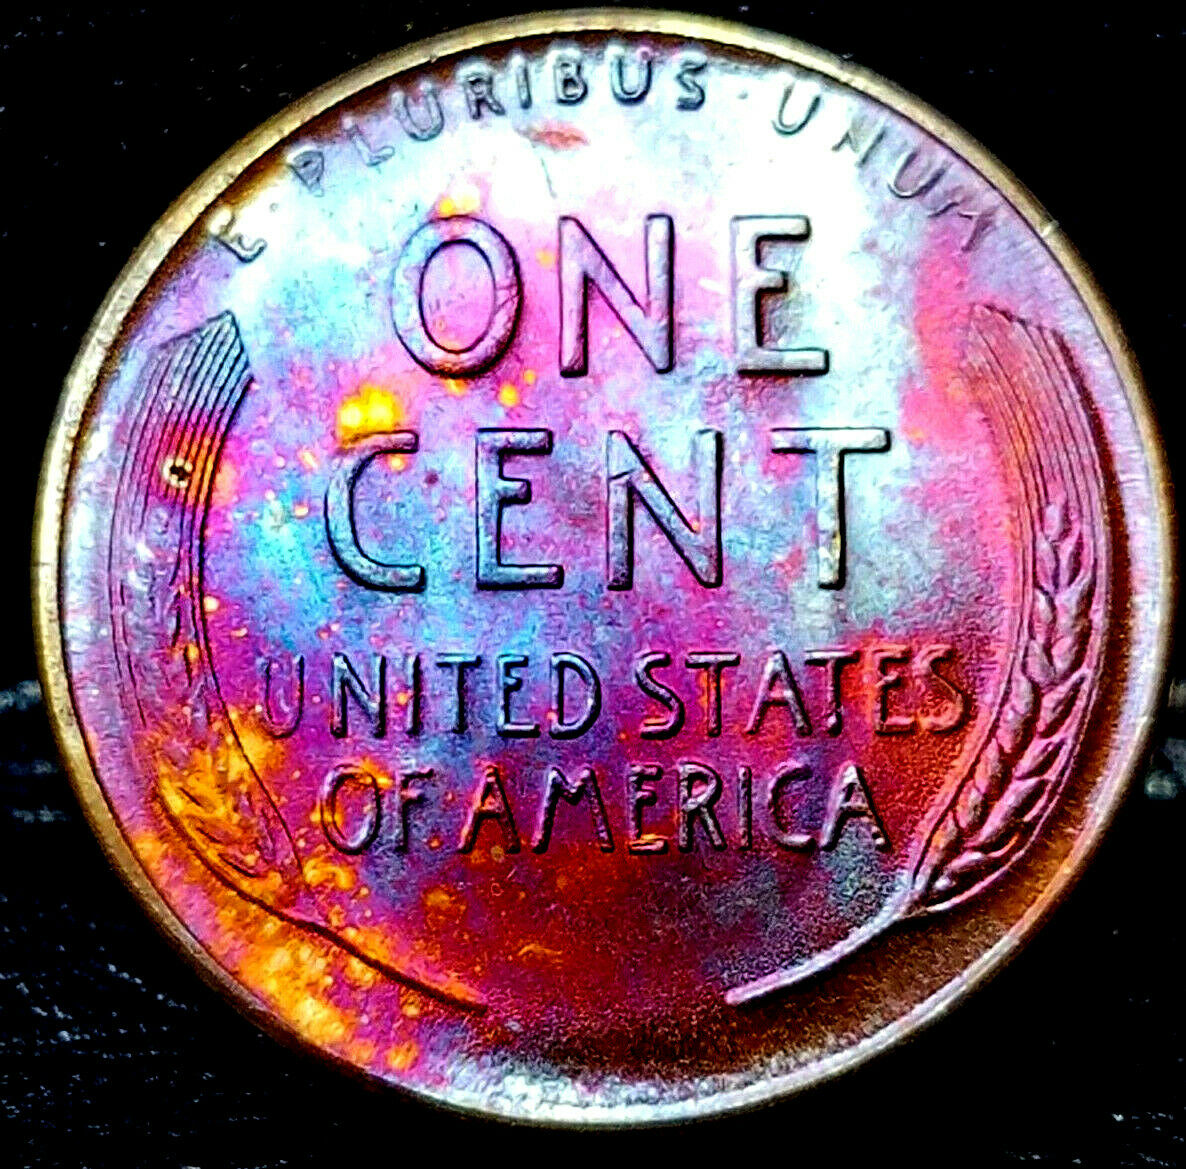 1947-D Lincoln  Cent  Toned  Superb Ms Gem++  $3.75 + 000  283946154090   bdoubrava12012 (2).jpg